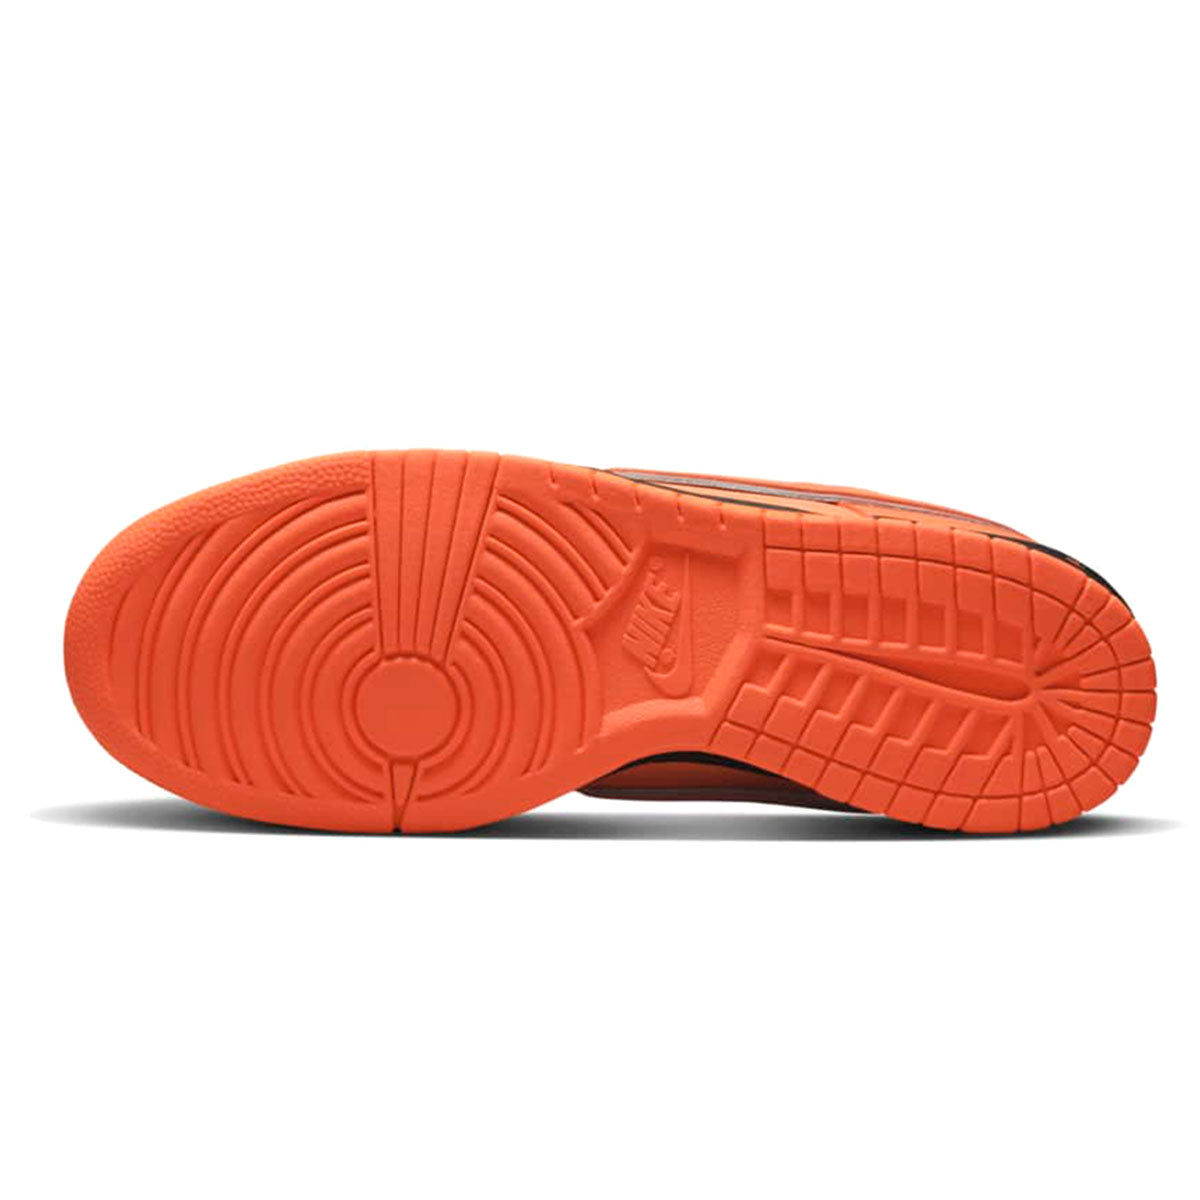 240107017-1 FD8776-800 Concepts × Nike SB Dunk Low SP “Orange Lobster”